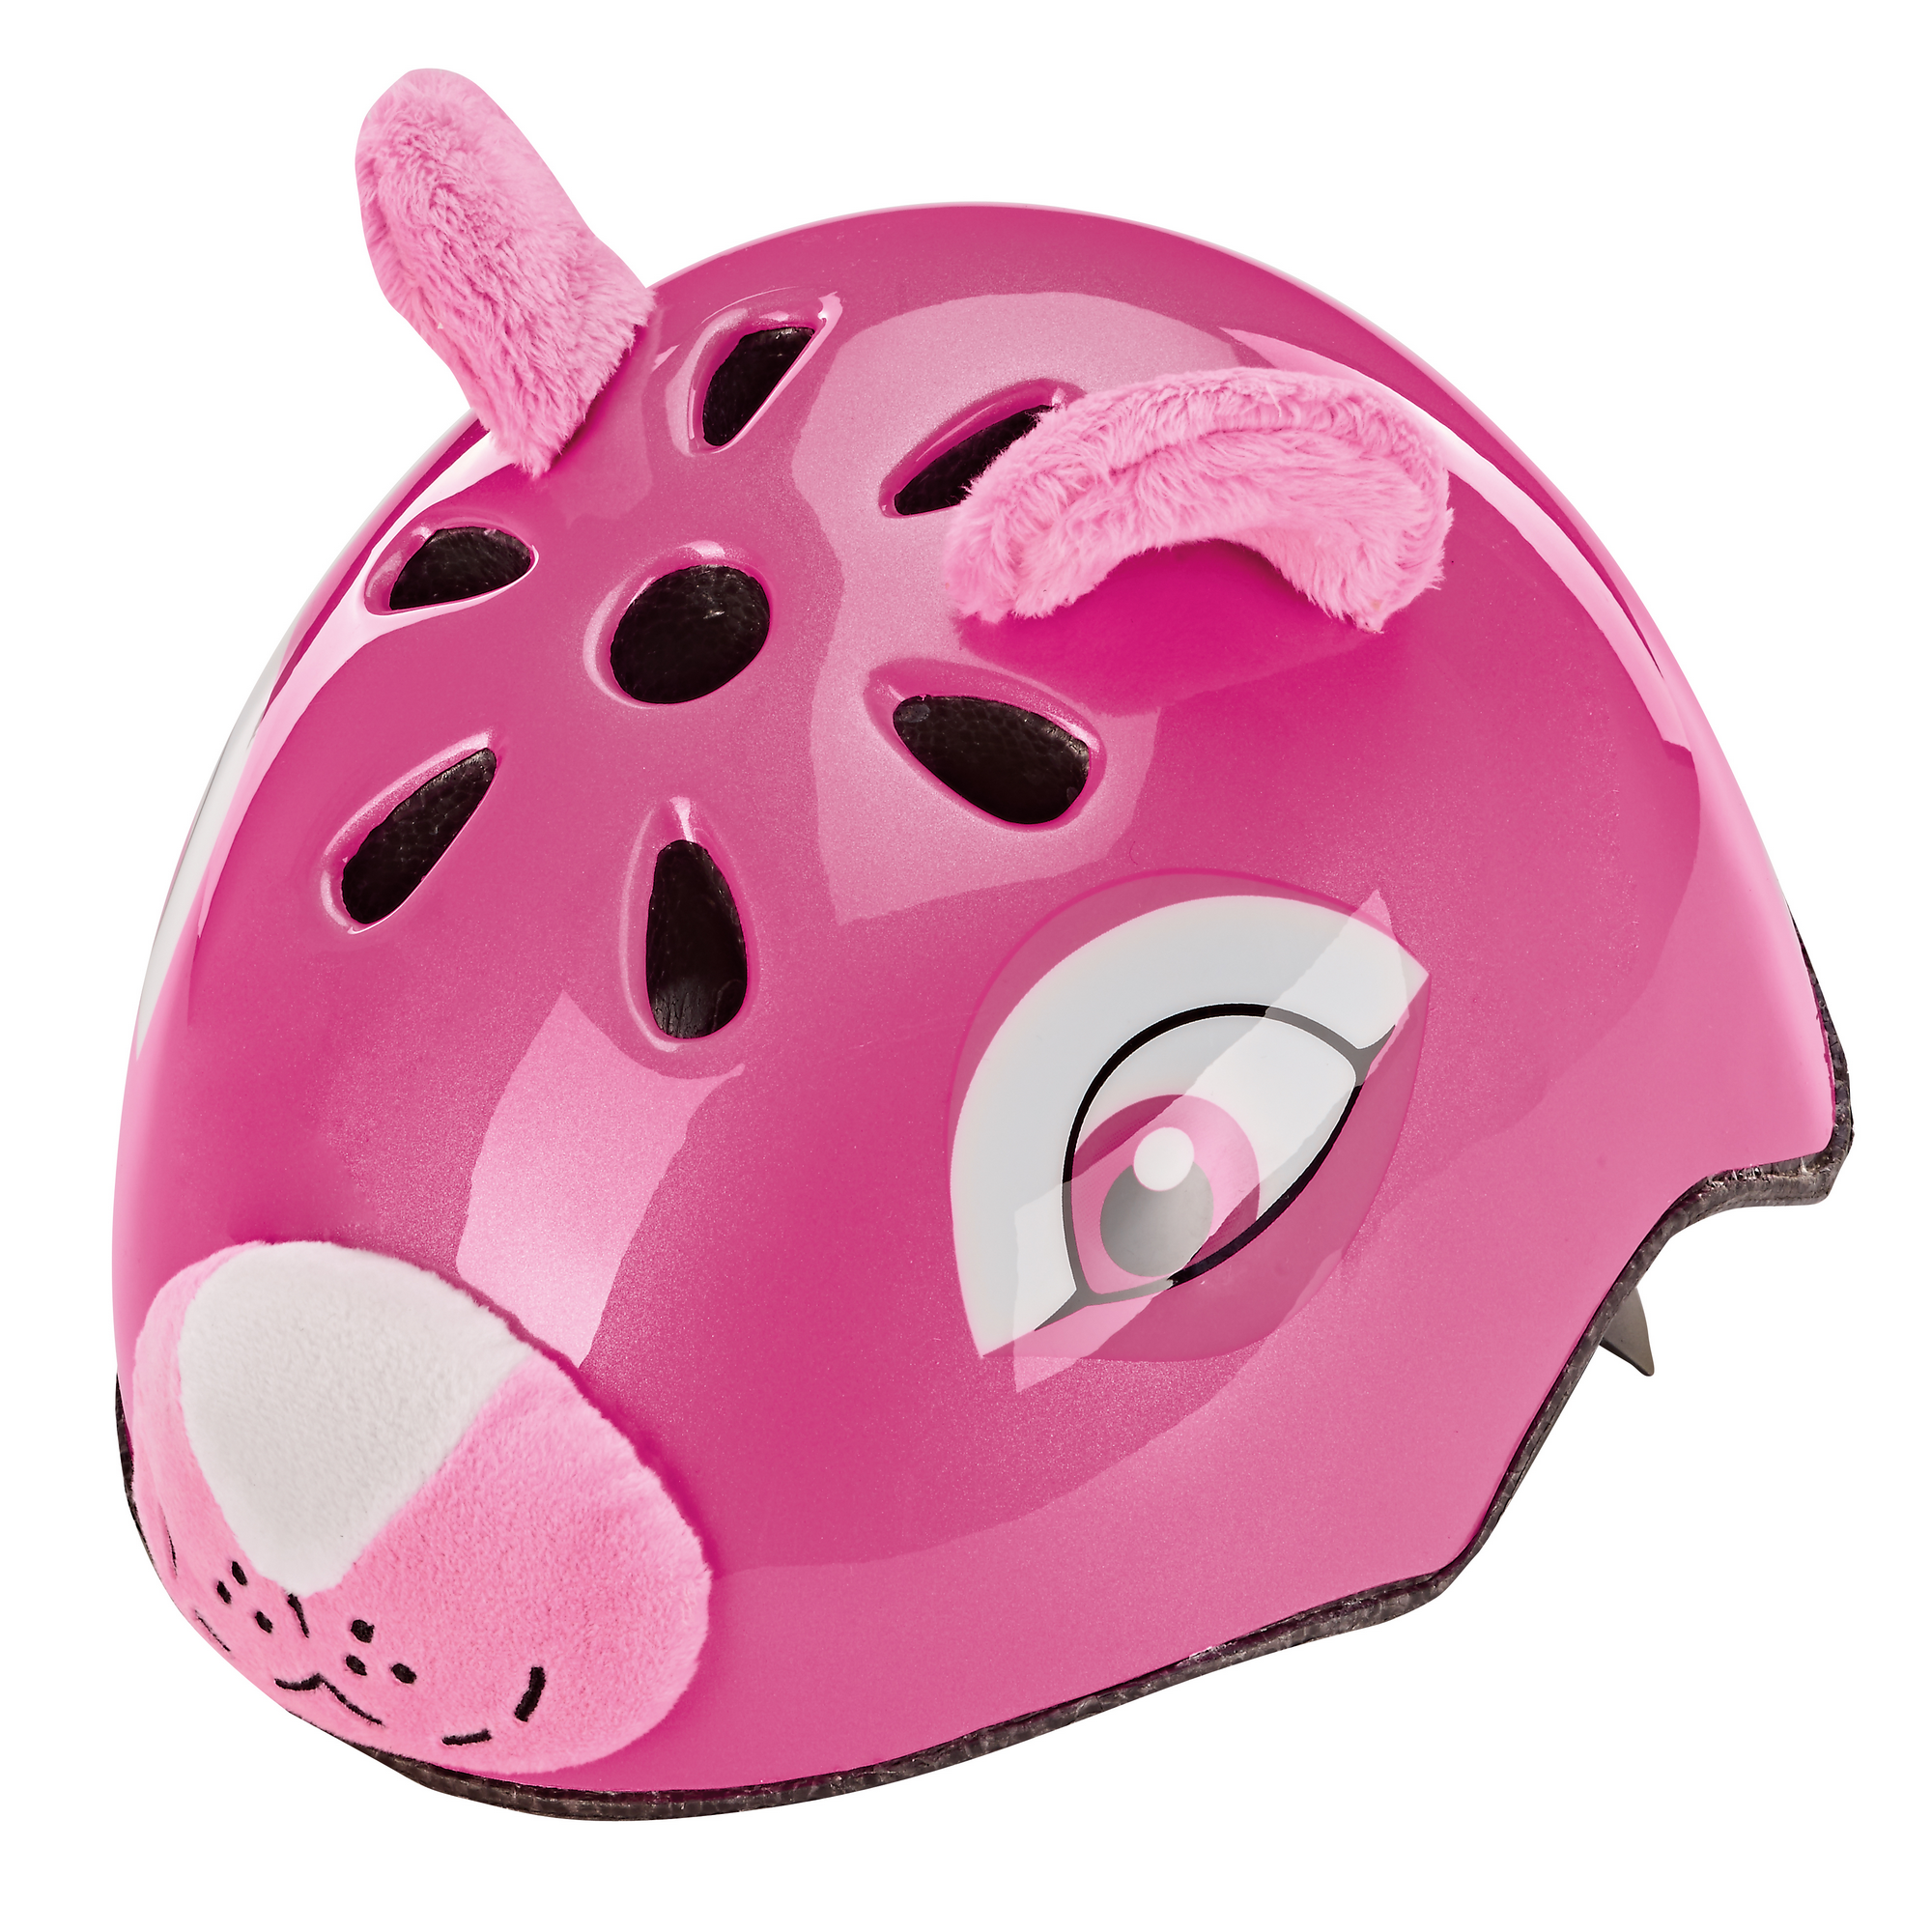 Prophete Fahrradhelm 'Bär' pink 50-54 cm